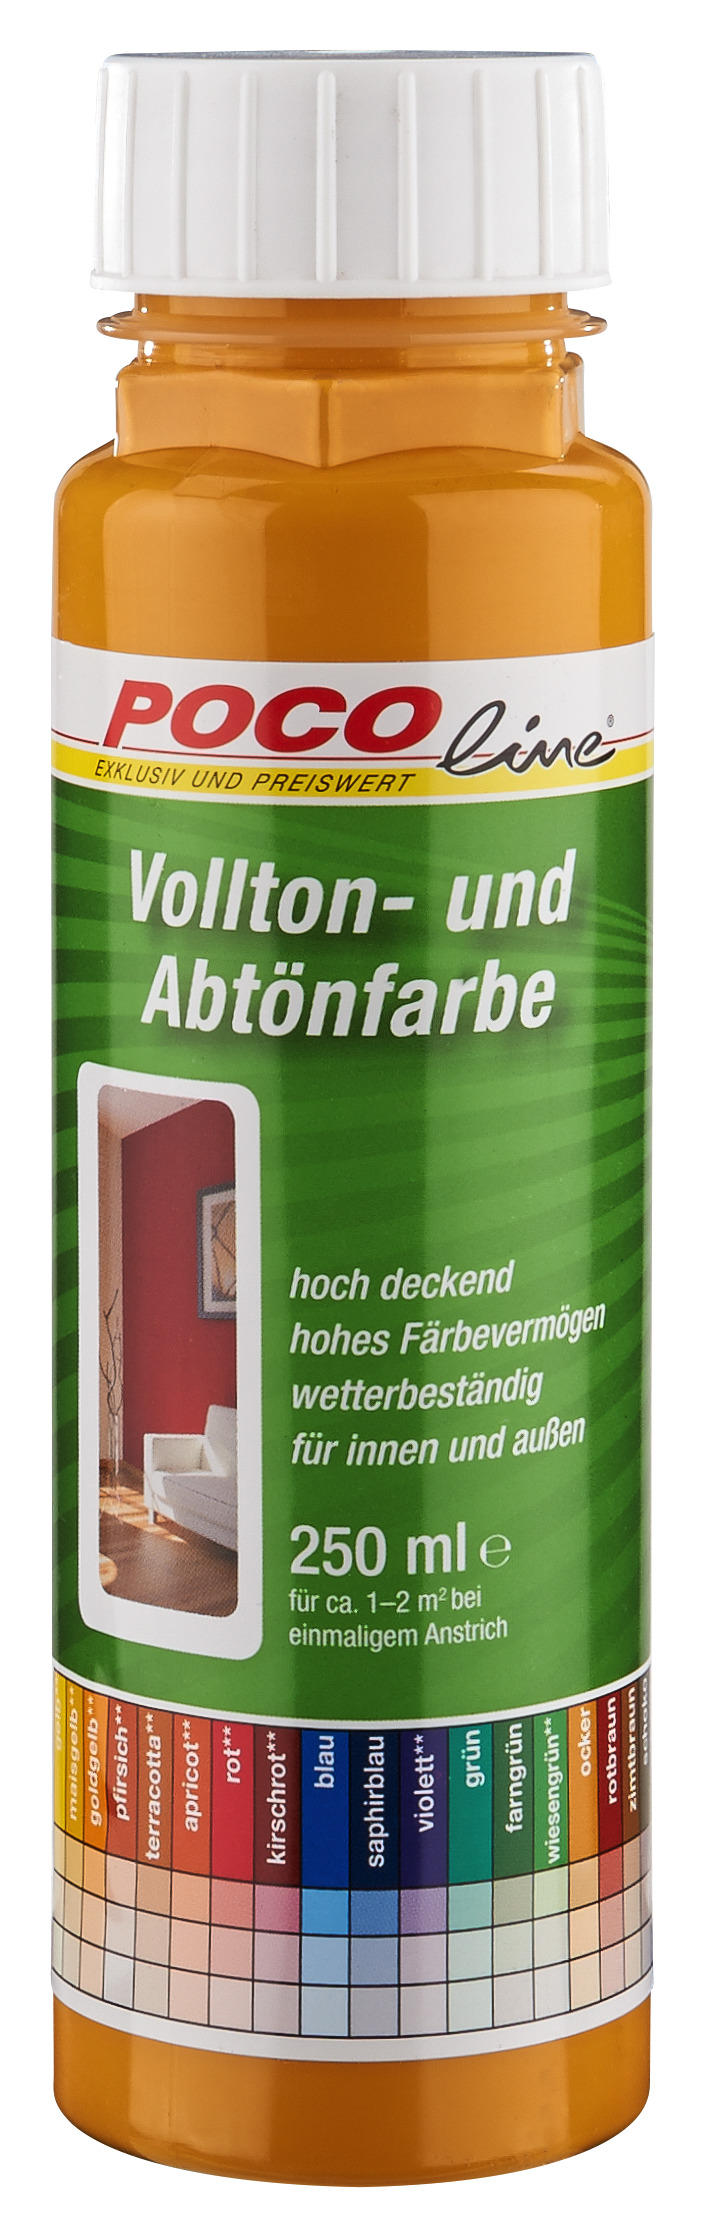 Pocoline Vollton- Und Abtönfarbe Ocker Ca. 0,25 L Voll+abtönfarbe 250ml Ocker - ocker (250ml)